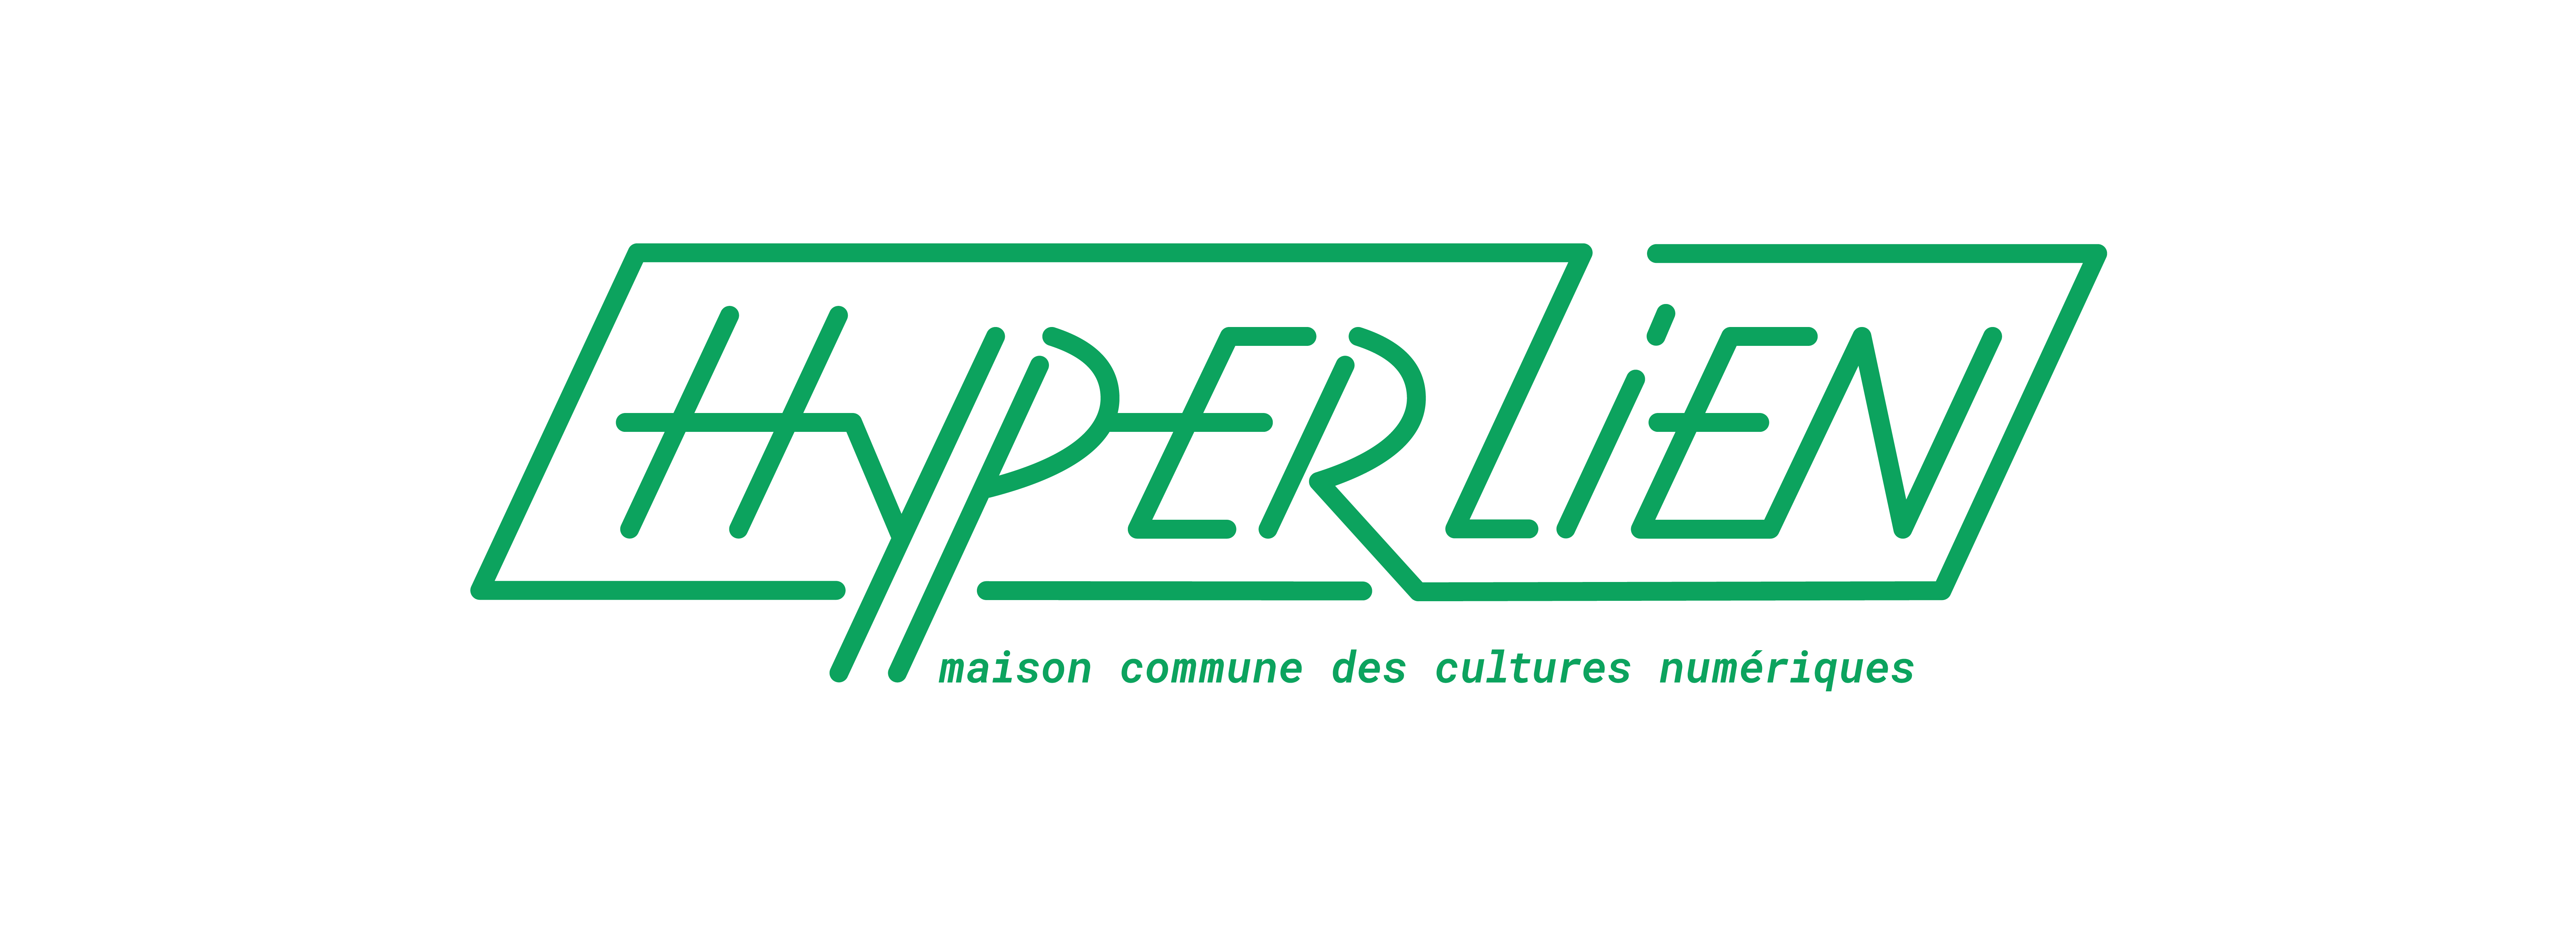 Hyperlien_final-vert